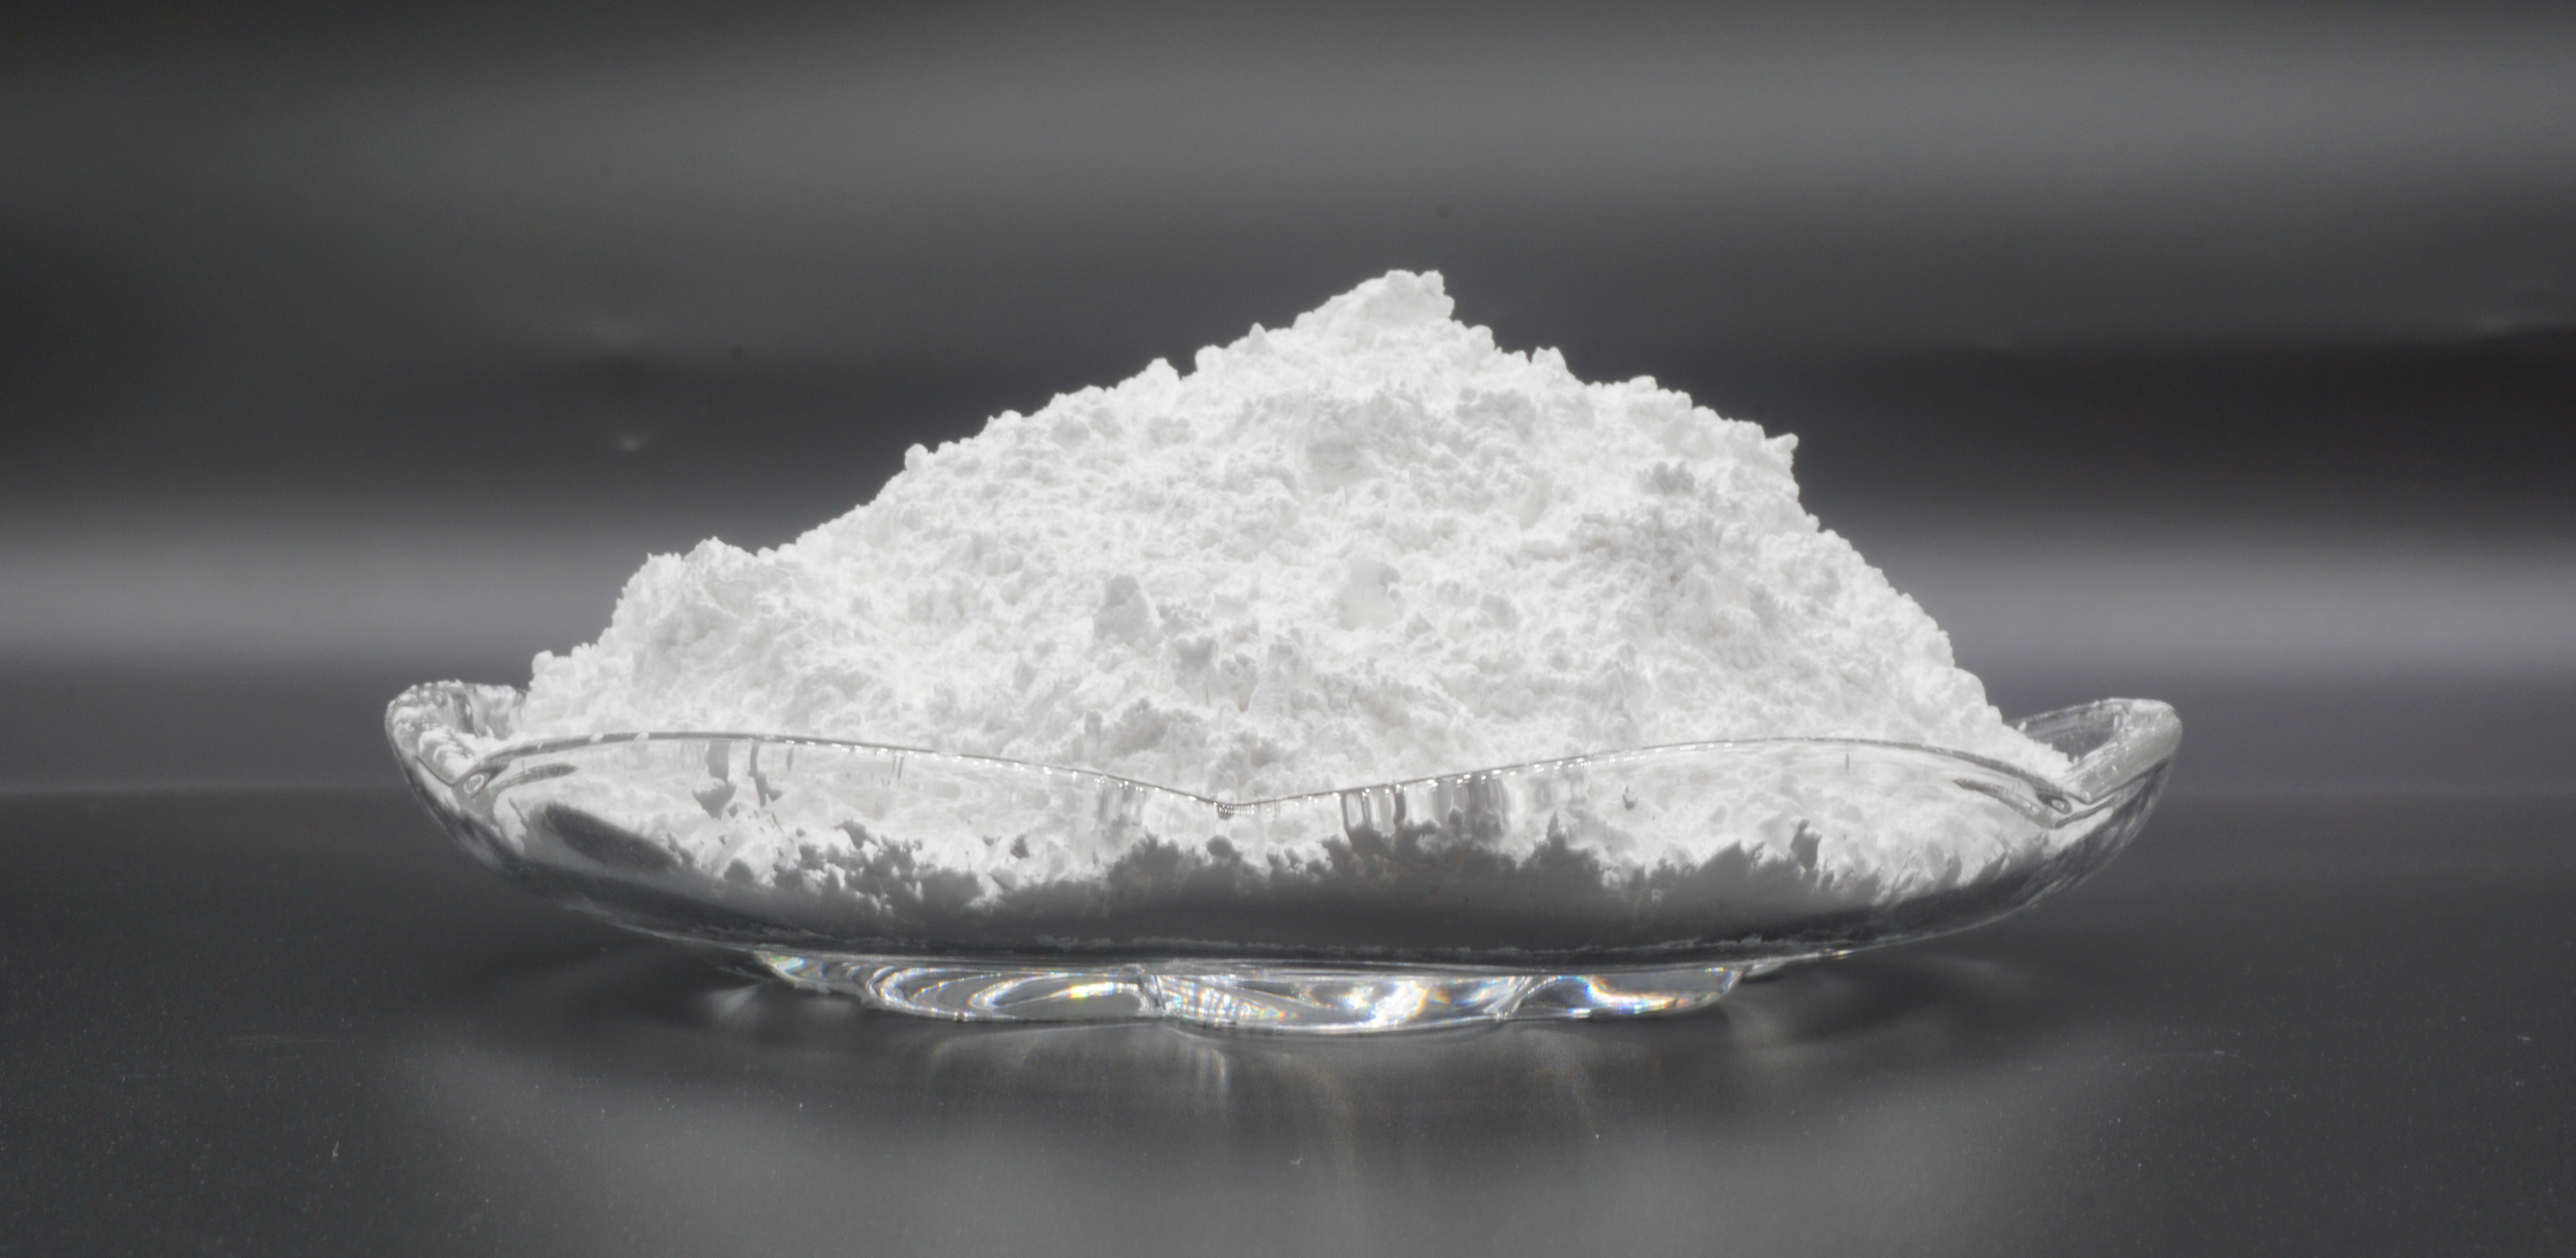 Inkcazo ecacileyo yokusetyenziswa kwe-α, γ, β alumina powder